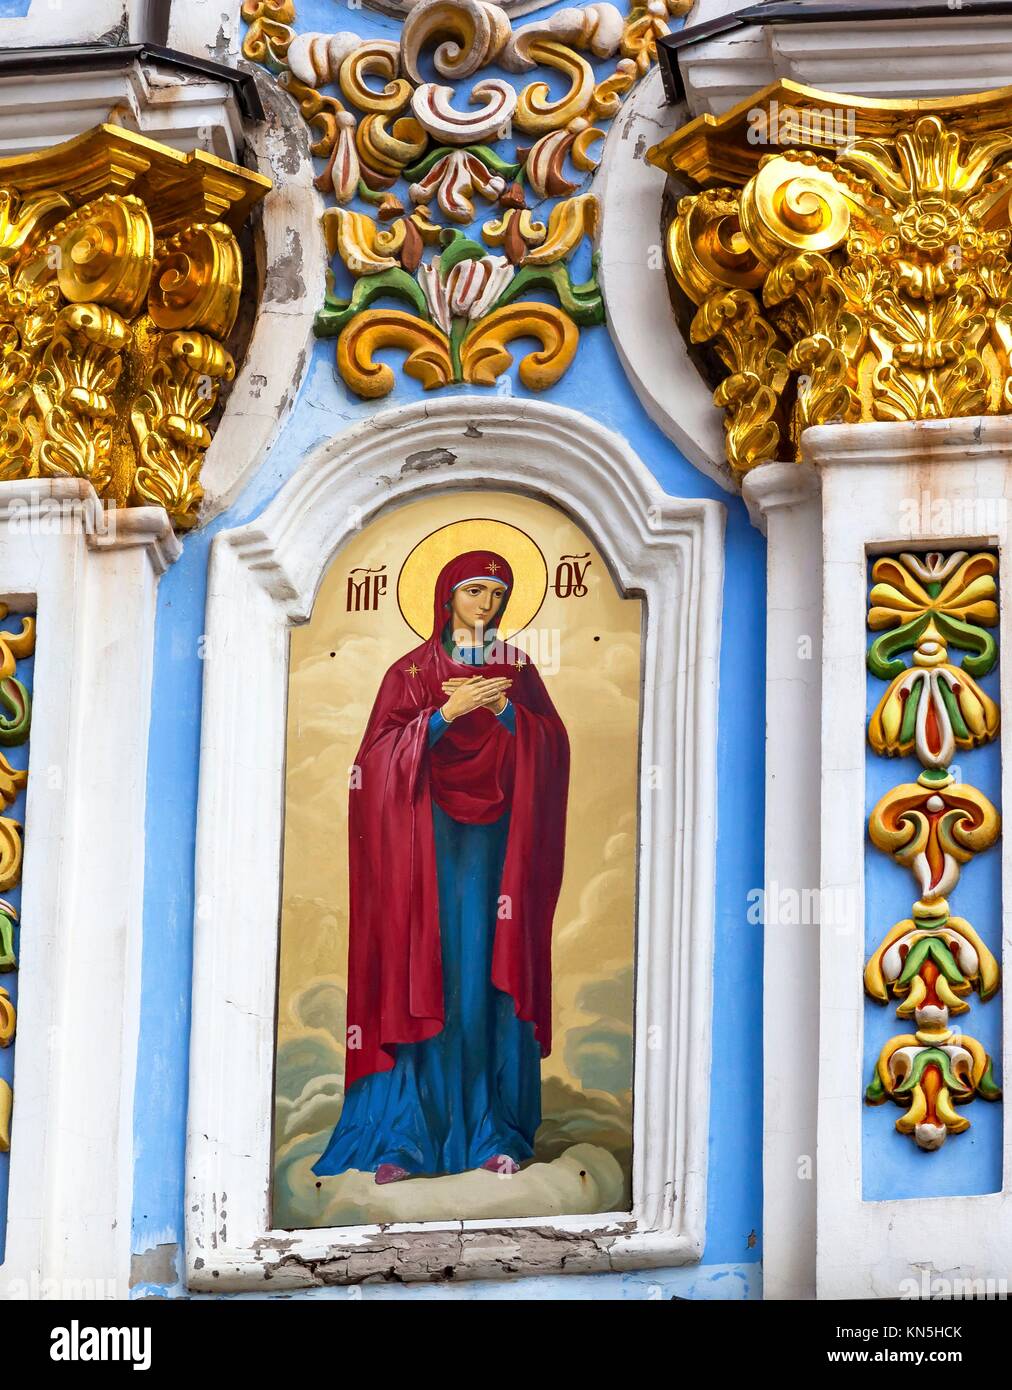 St. Michael Kloster St. Barbara Malerei Fassade Kiew, Ukraine. Saint Michael's ist eine funktionierende Griechische Orthordox Monasatery in Kiew. Stockfoto